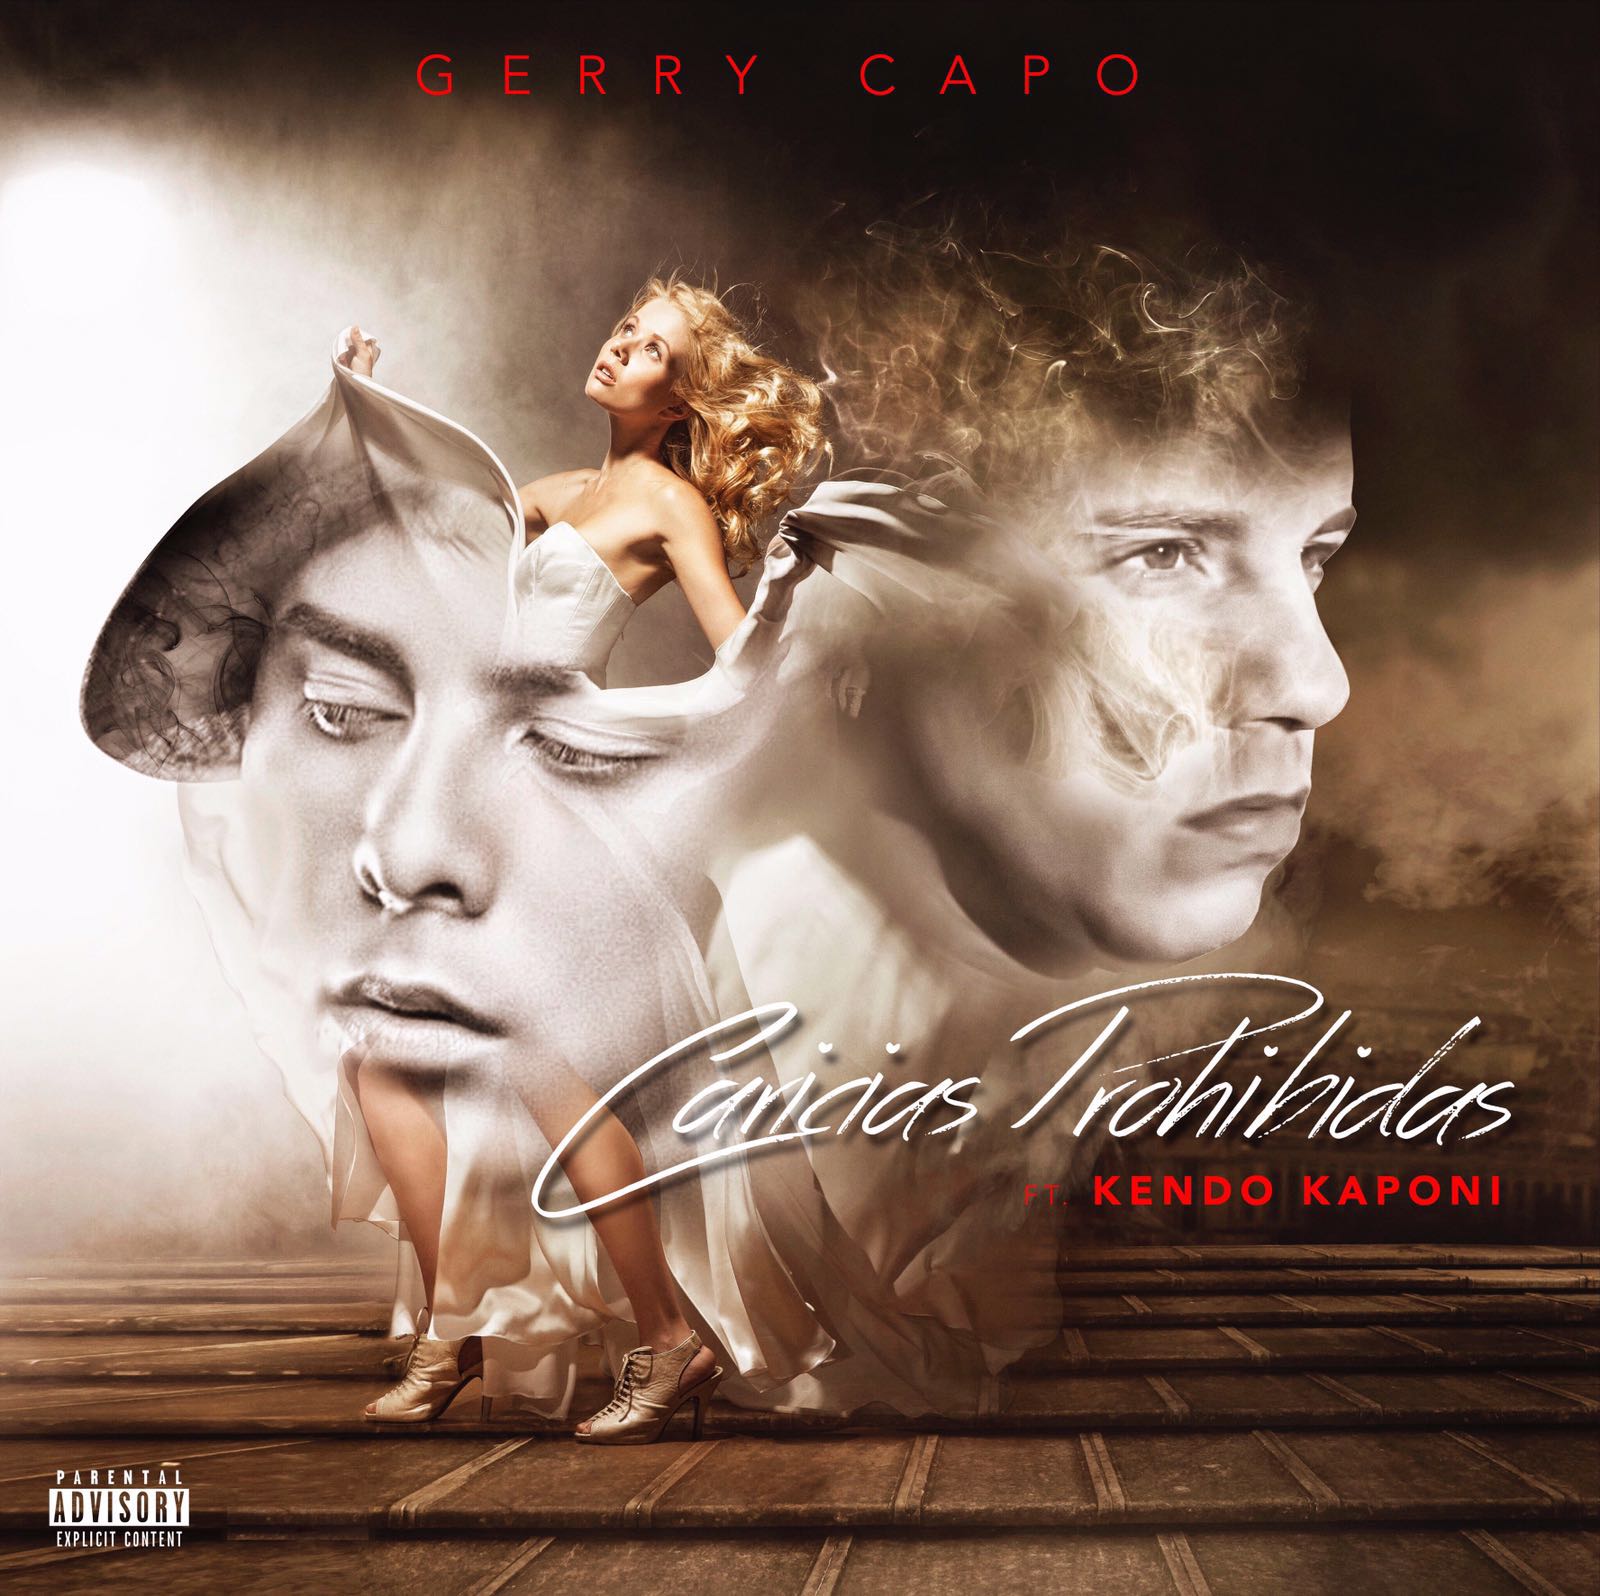 Caricias Prohibidas - Kendo Kaponi ft. Gerry Capo